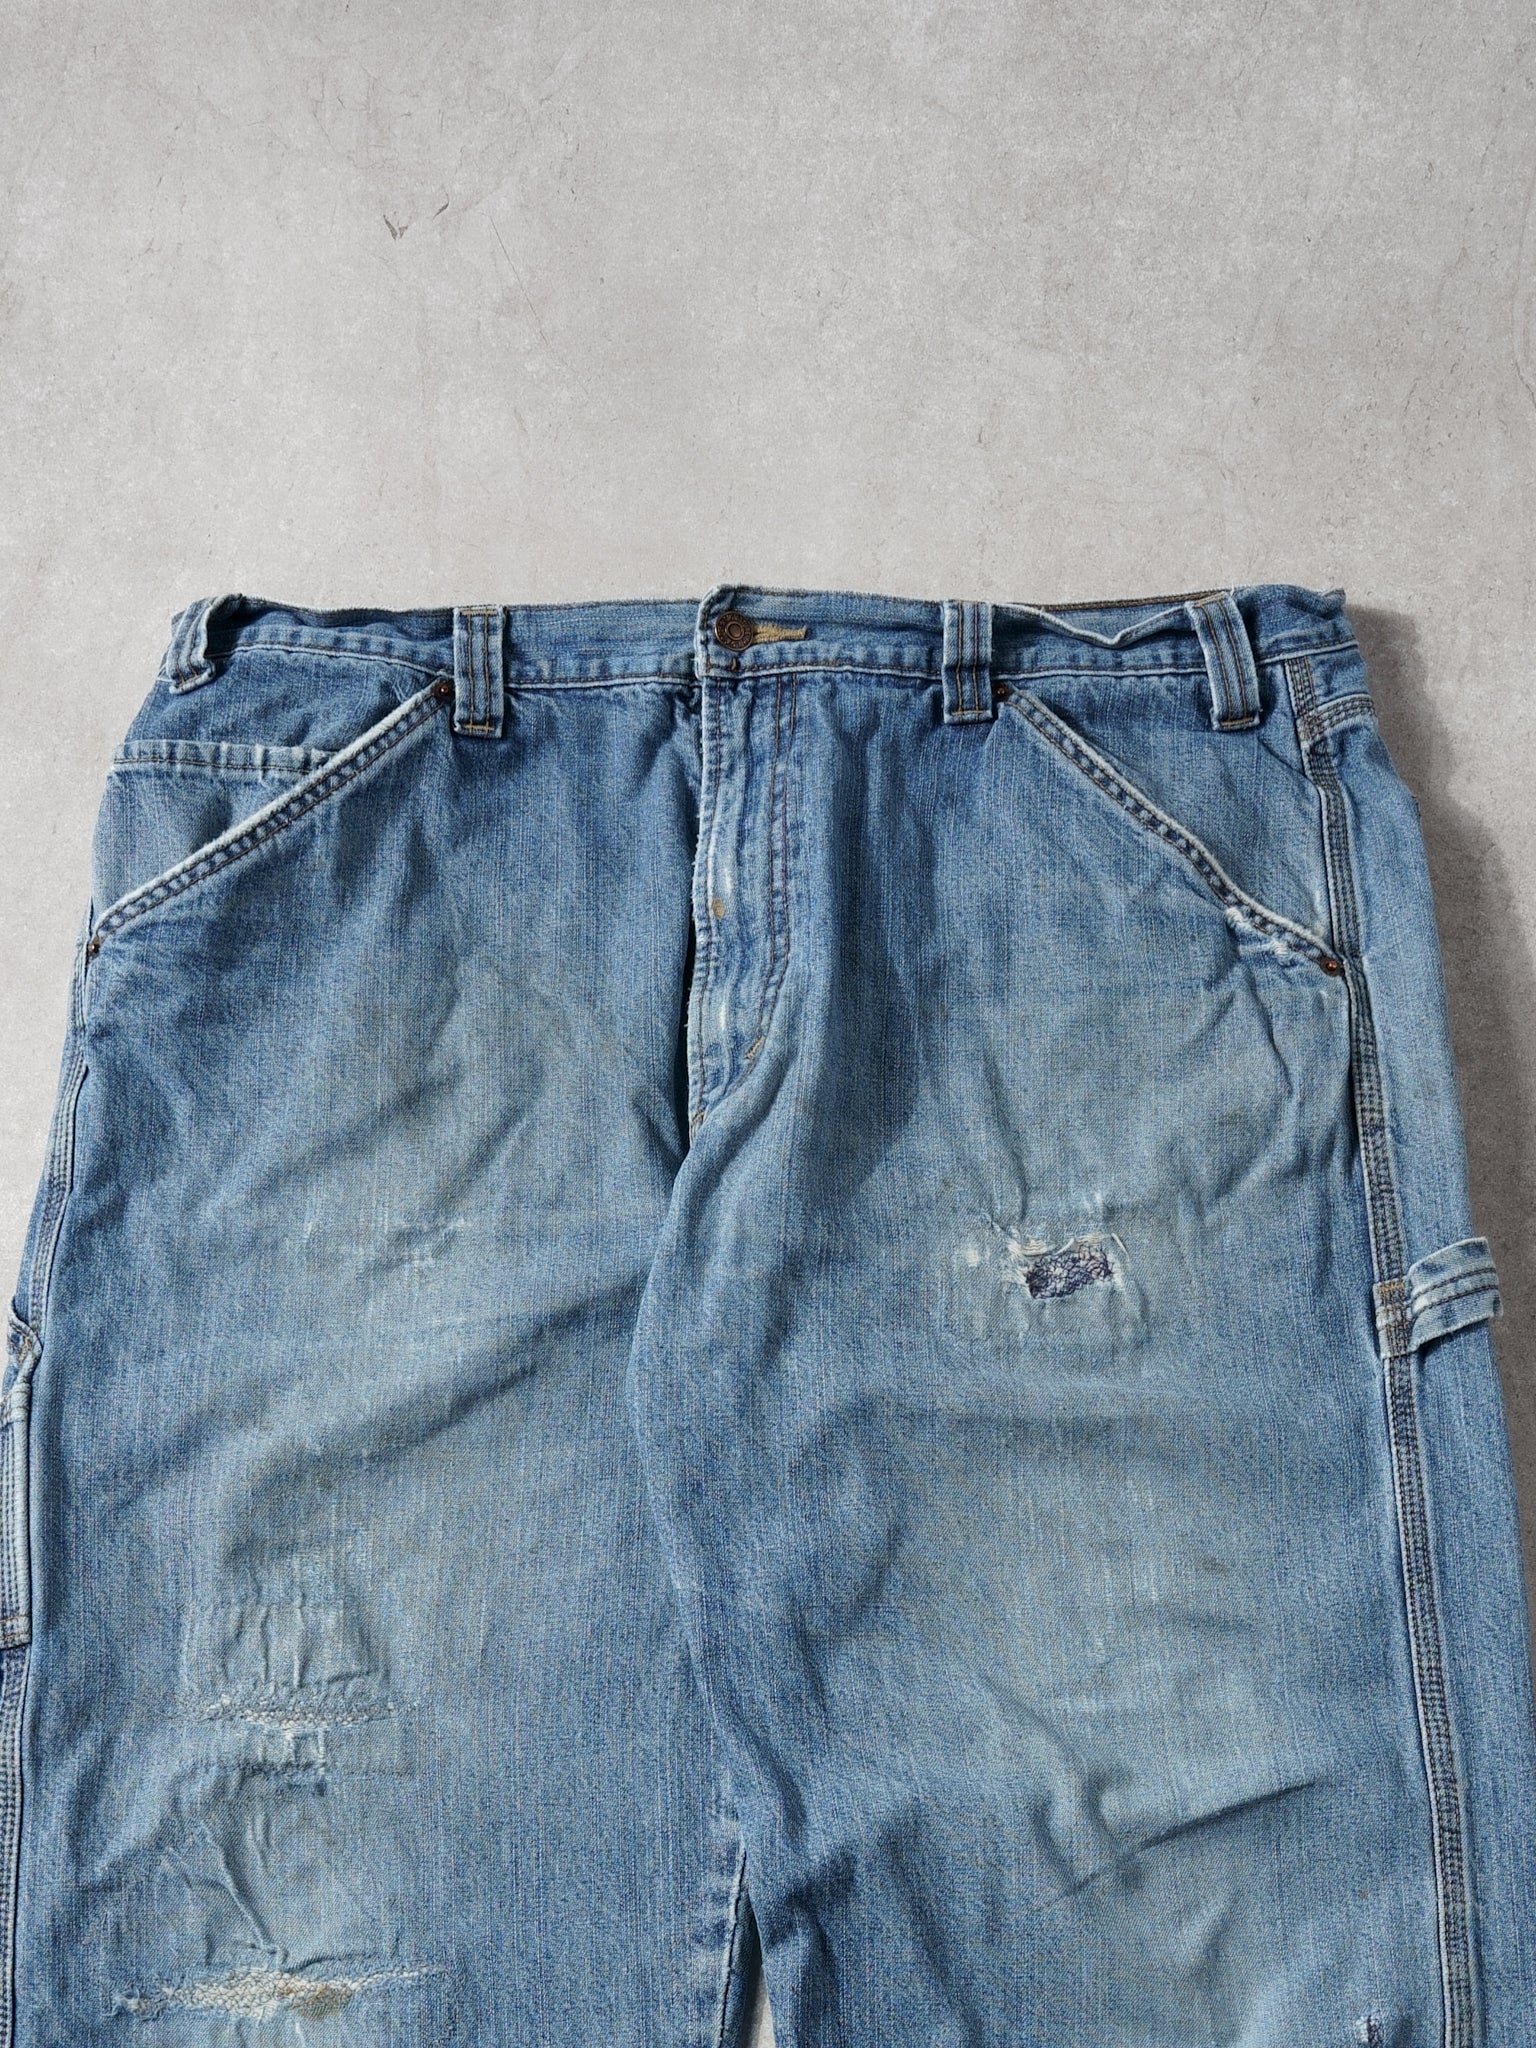 Vintage 90s Light Wash Blue Levi's Denim Carpenter Pants (38x32)